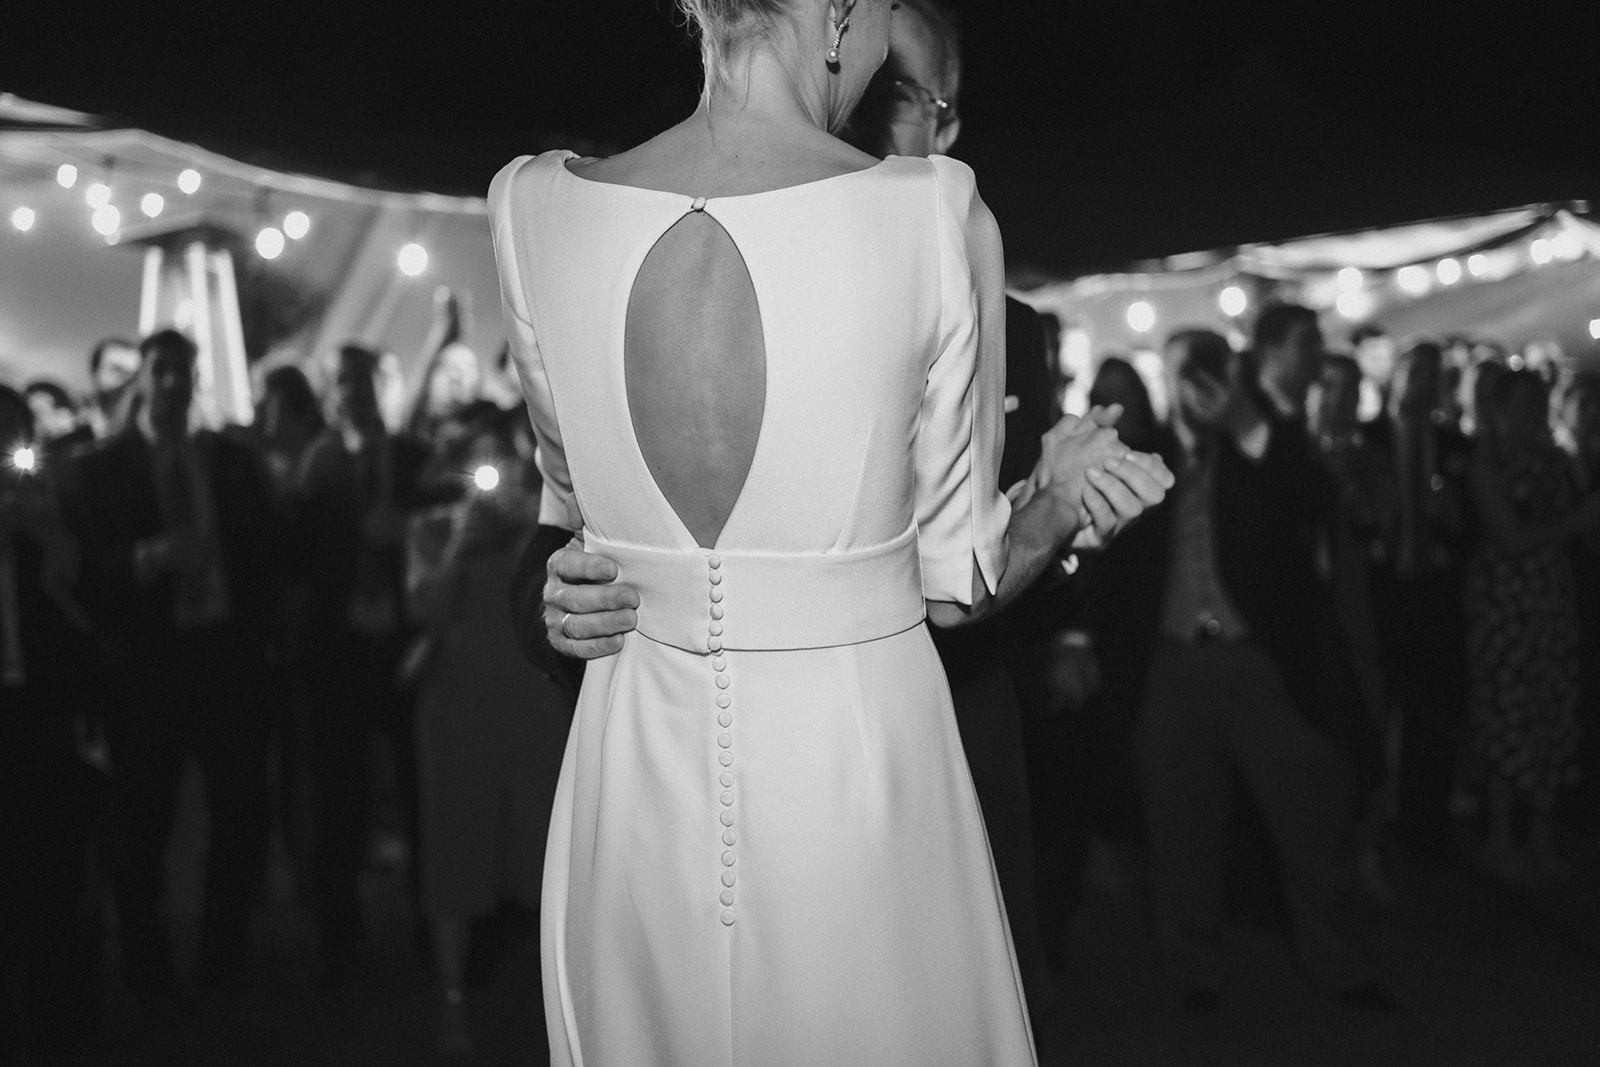 Detalle del vestido de la novia por detrás mientras baila